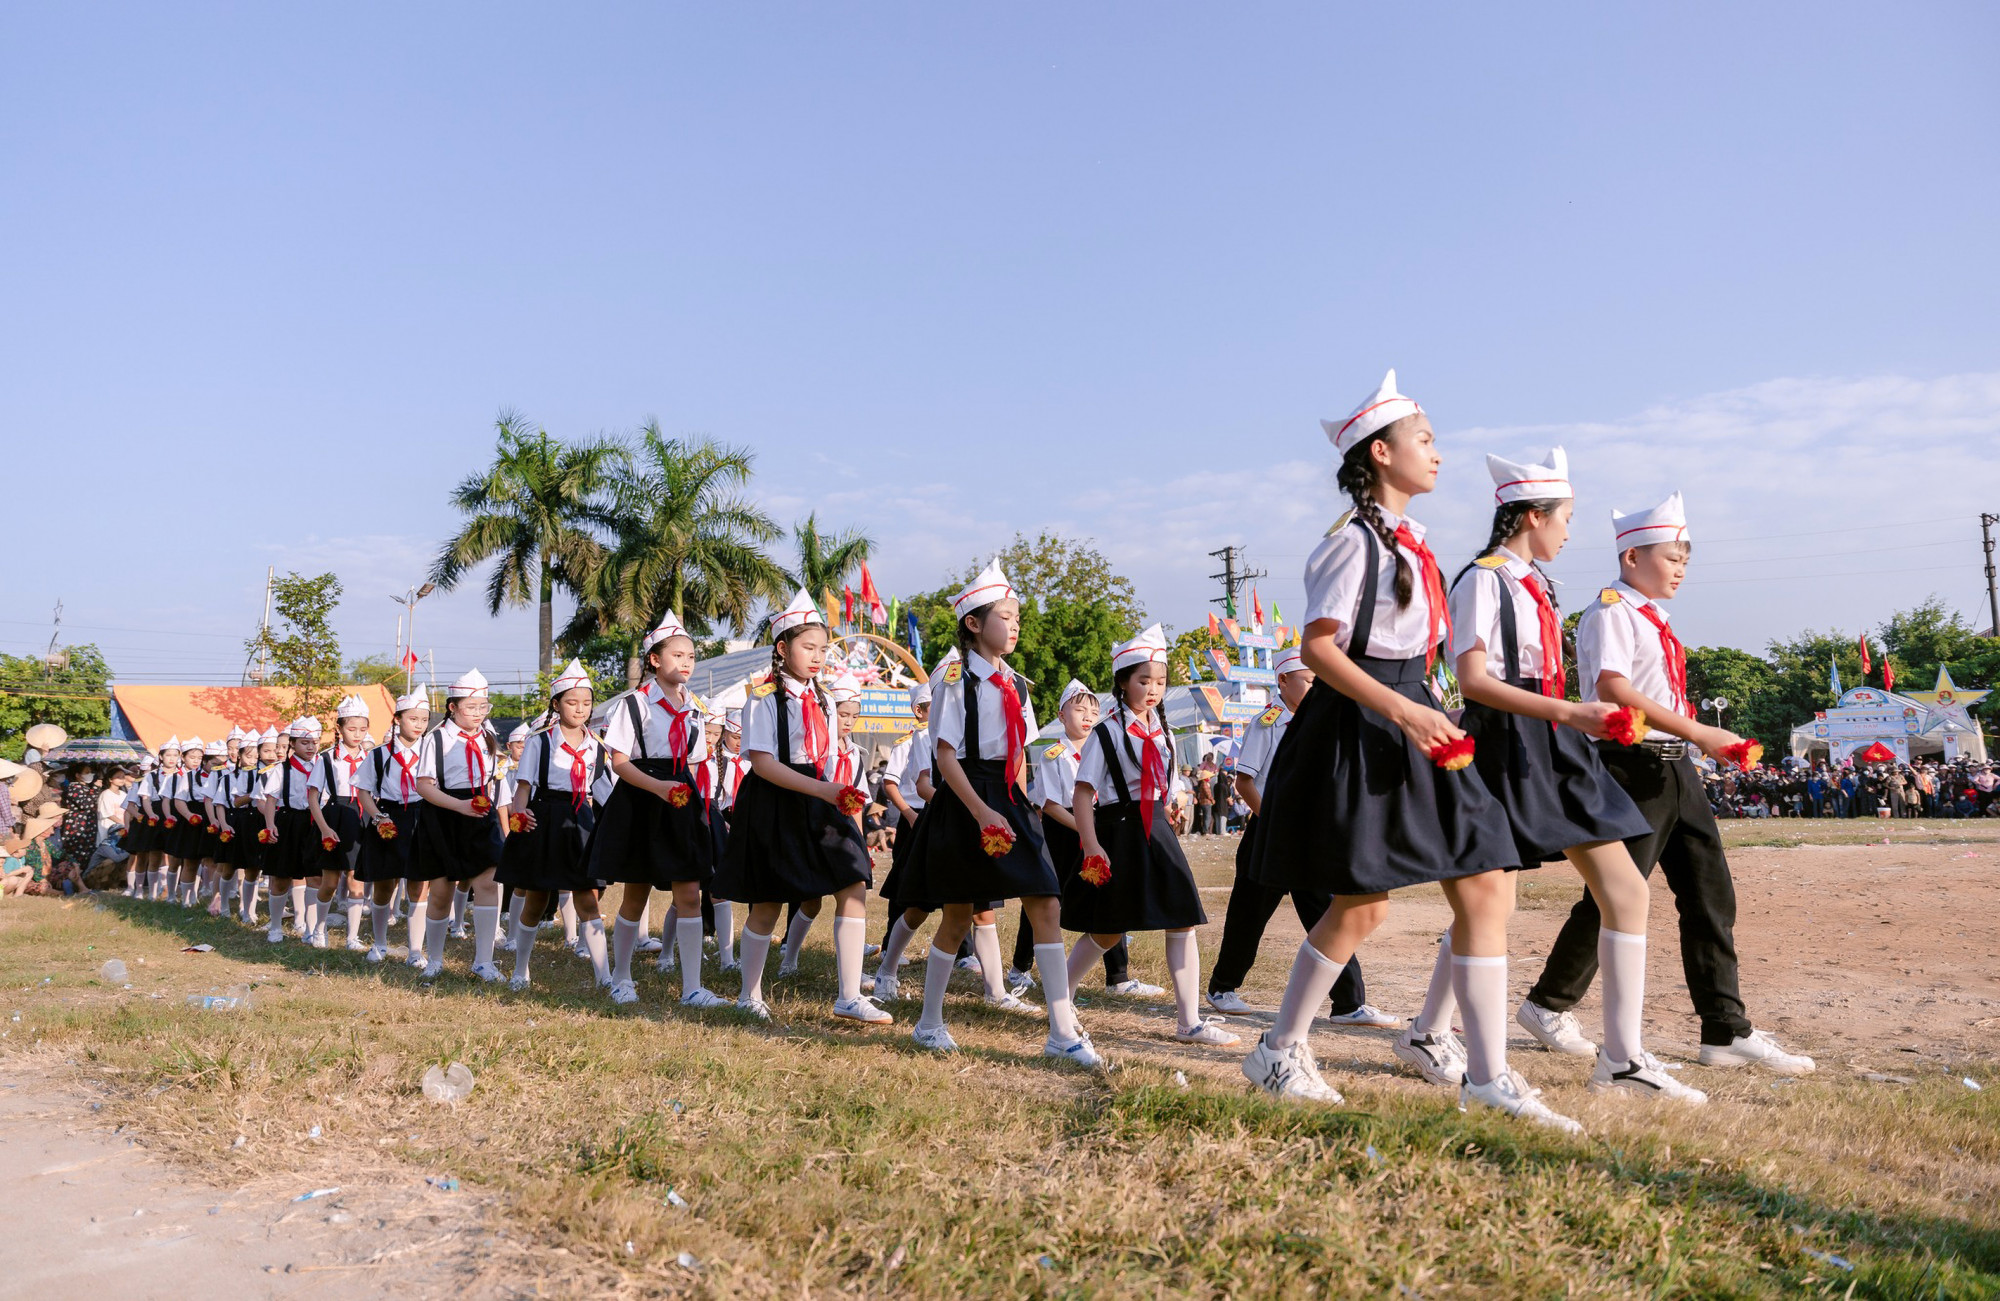 Hội thi nghi thức Đội là một trong những hoạt động được tổ chức thường niên ở các địa phương tại Nghệ An nhằm tạo khí thế vui tươi, phấn khởi trong ngày tết Độc lập của dân tộc.